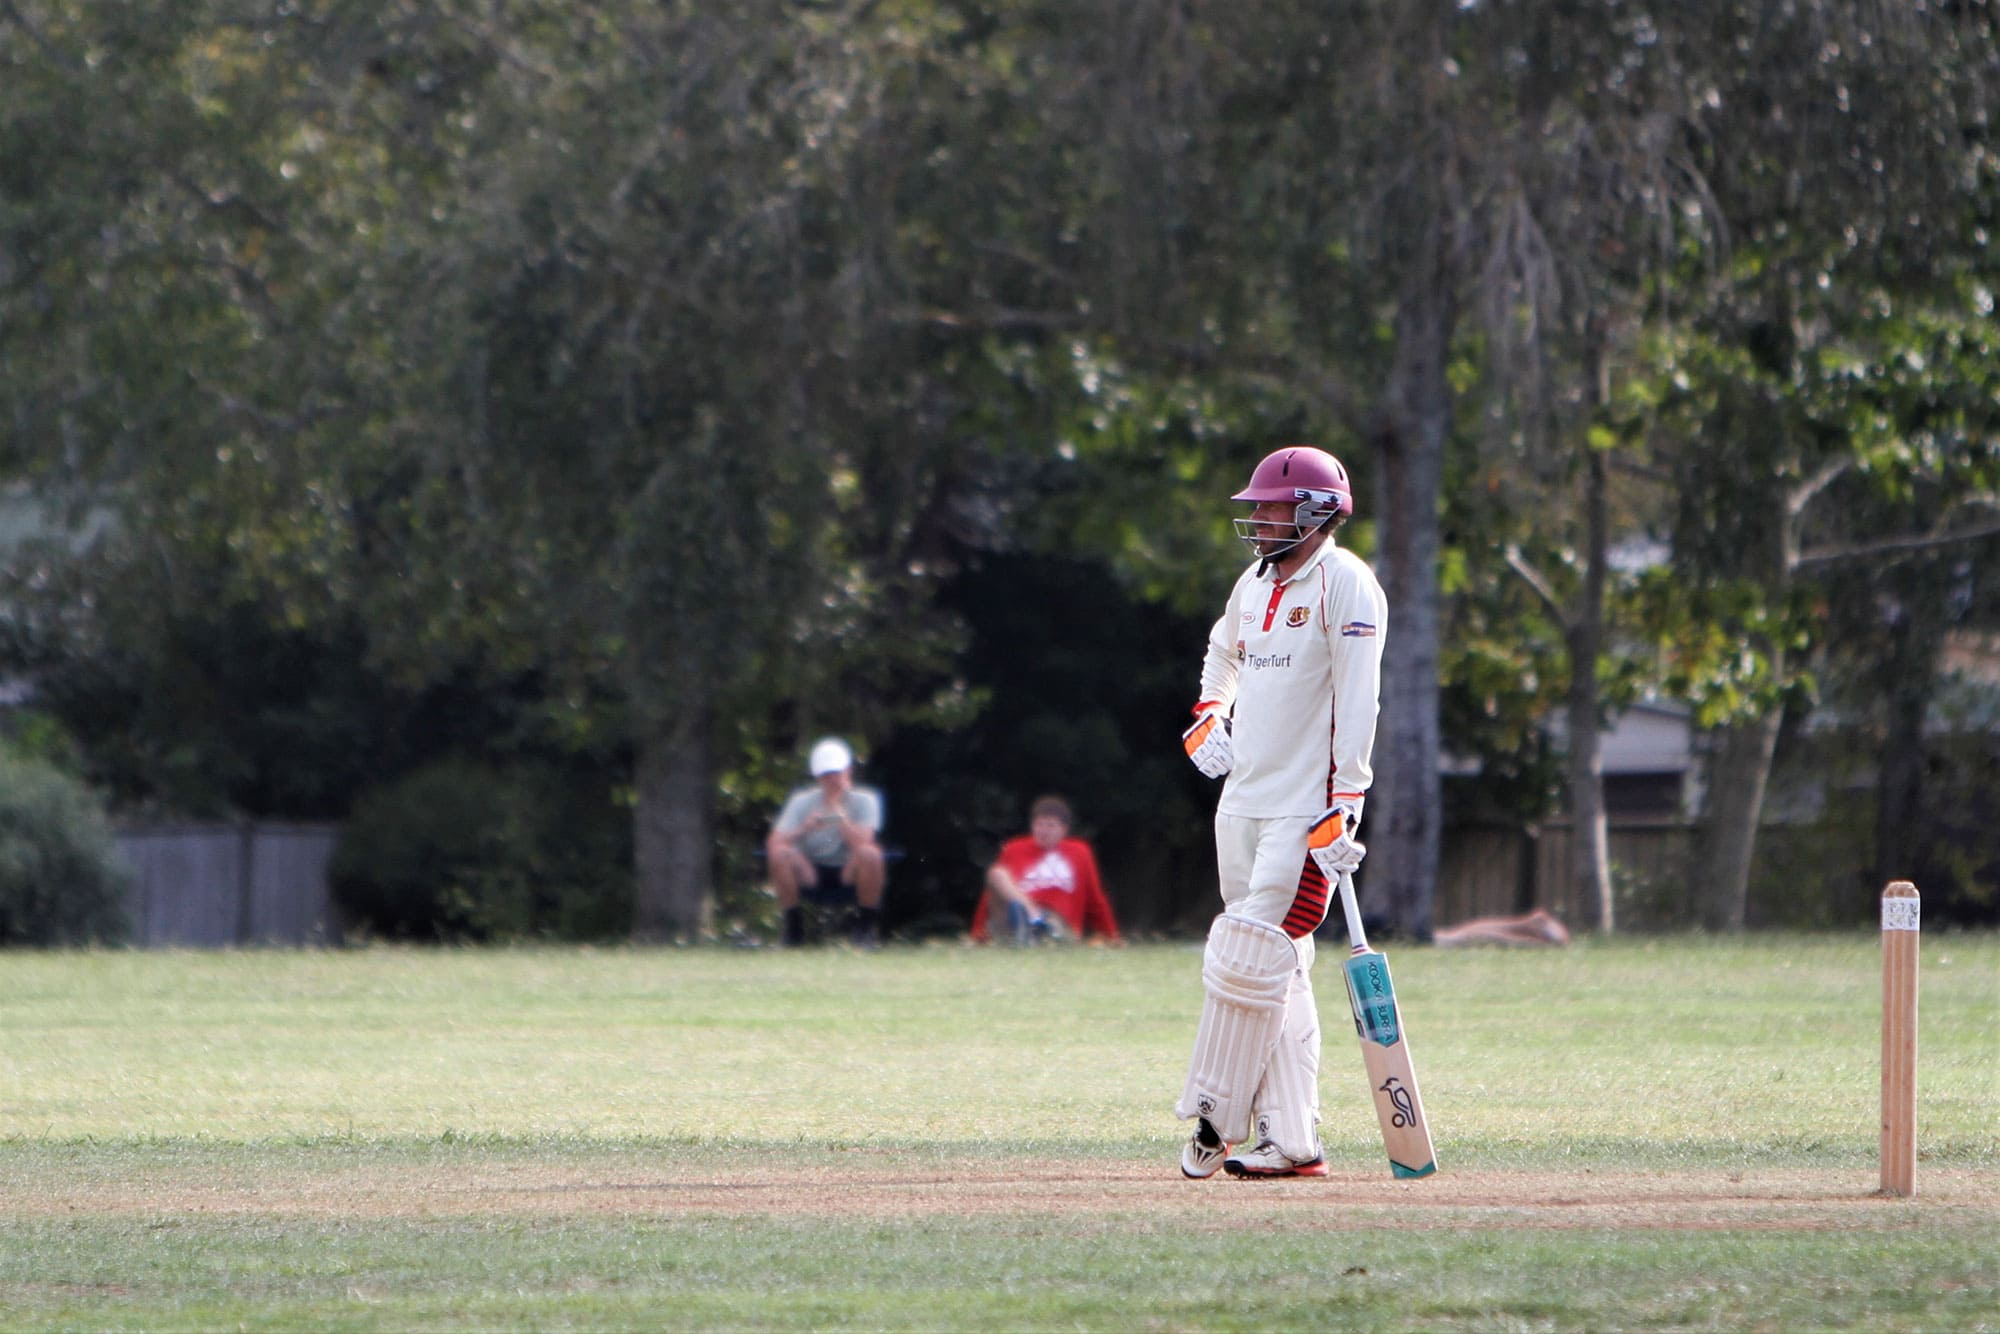 hamilton old boys cricket club Waikato New Zealand Team Gallery Photos 5